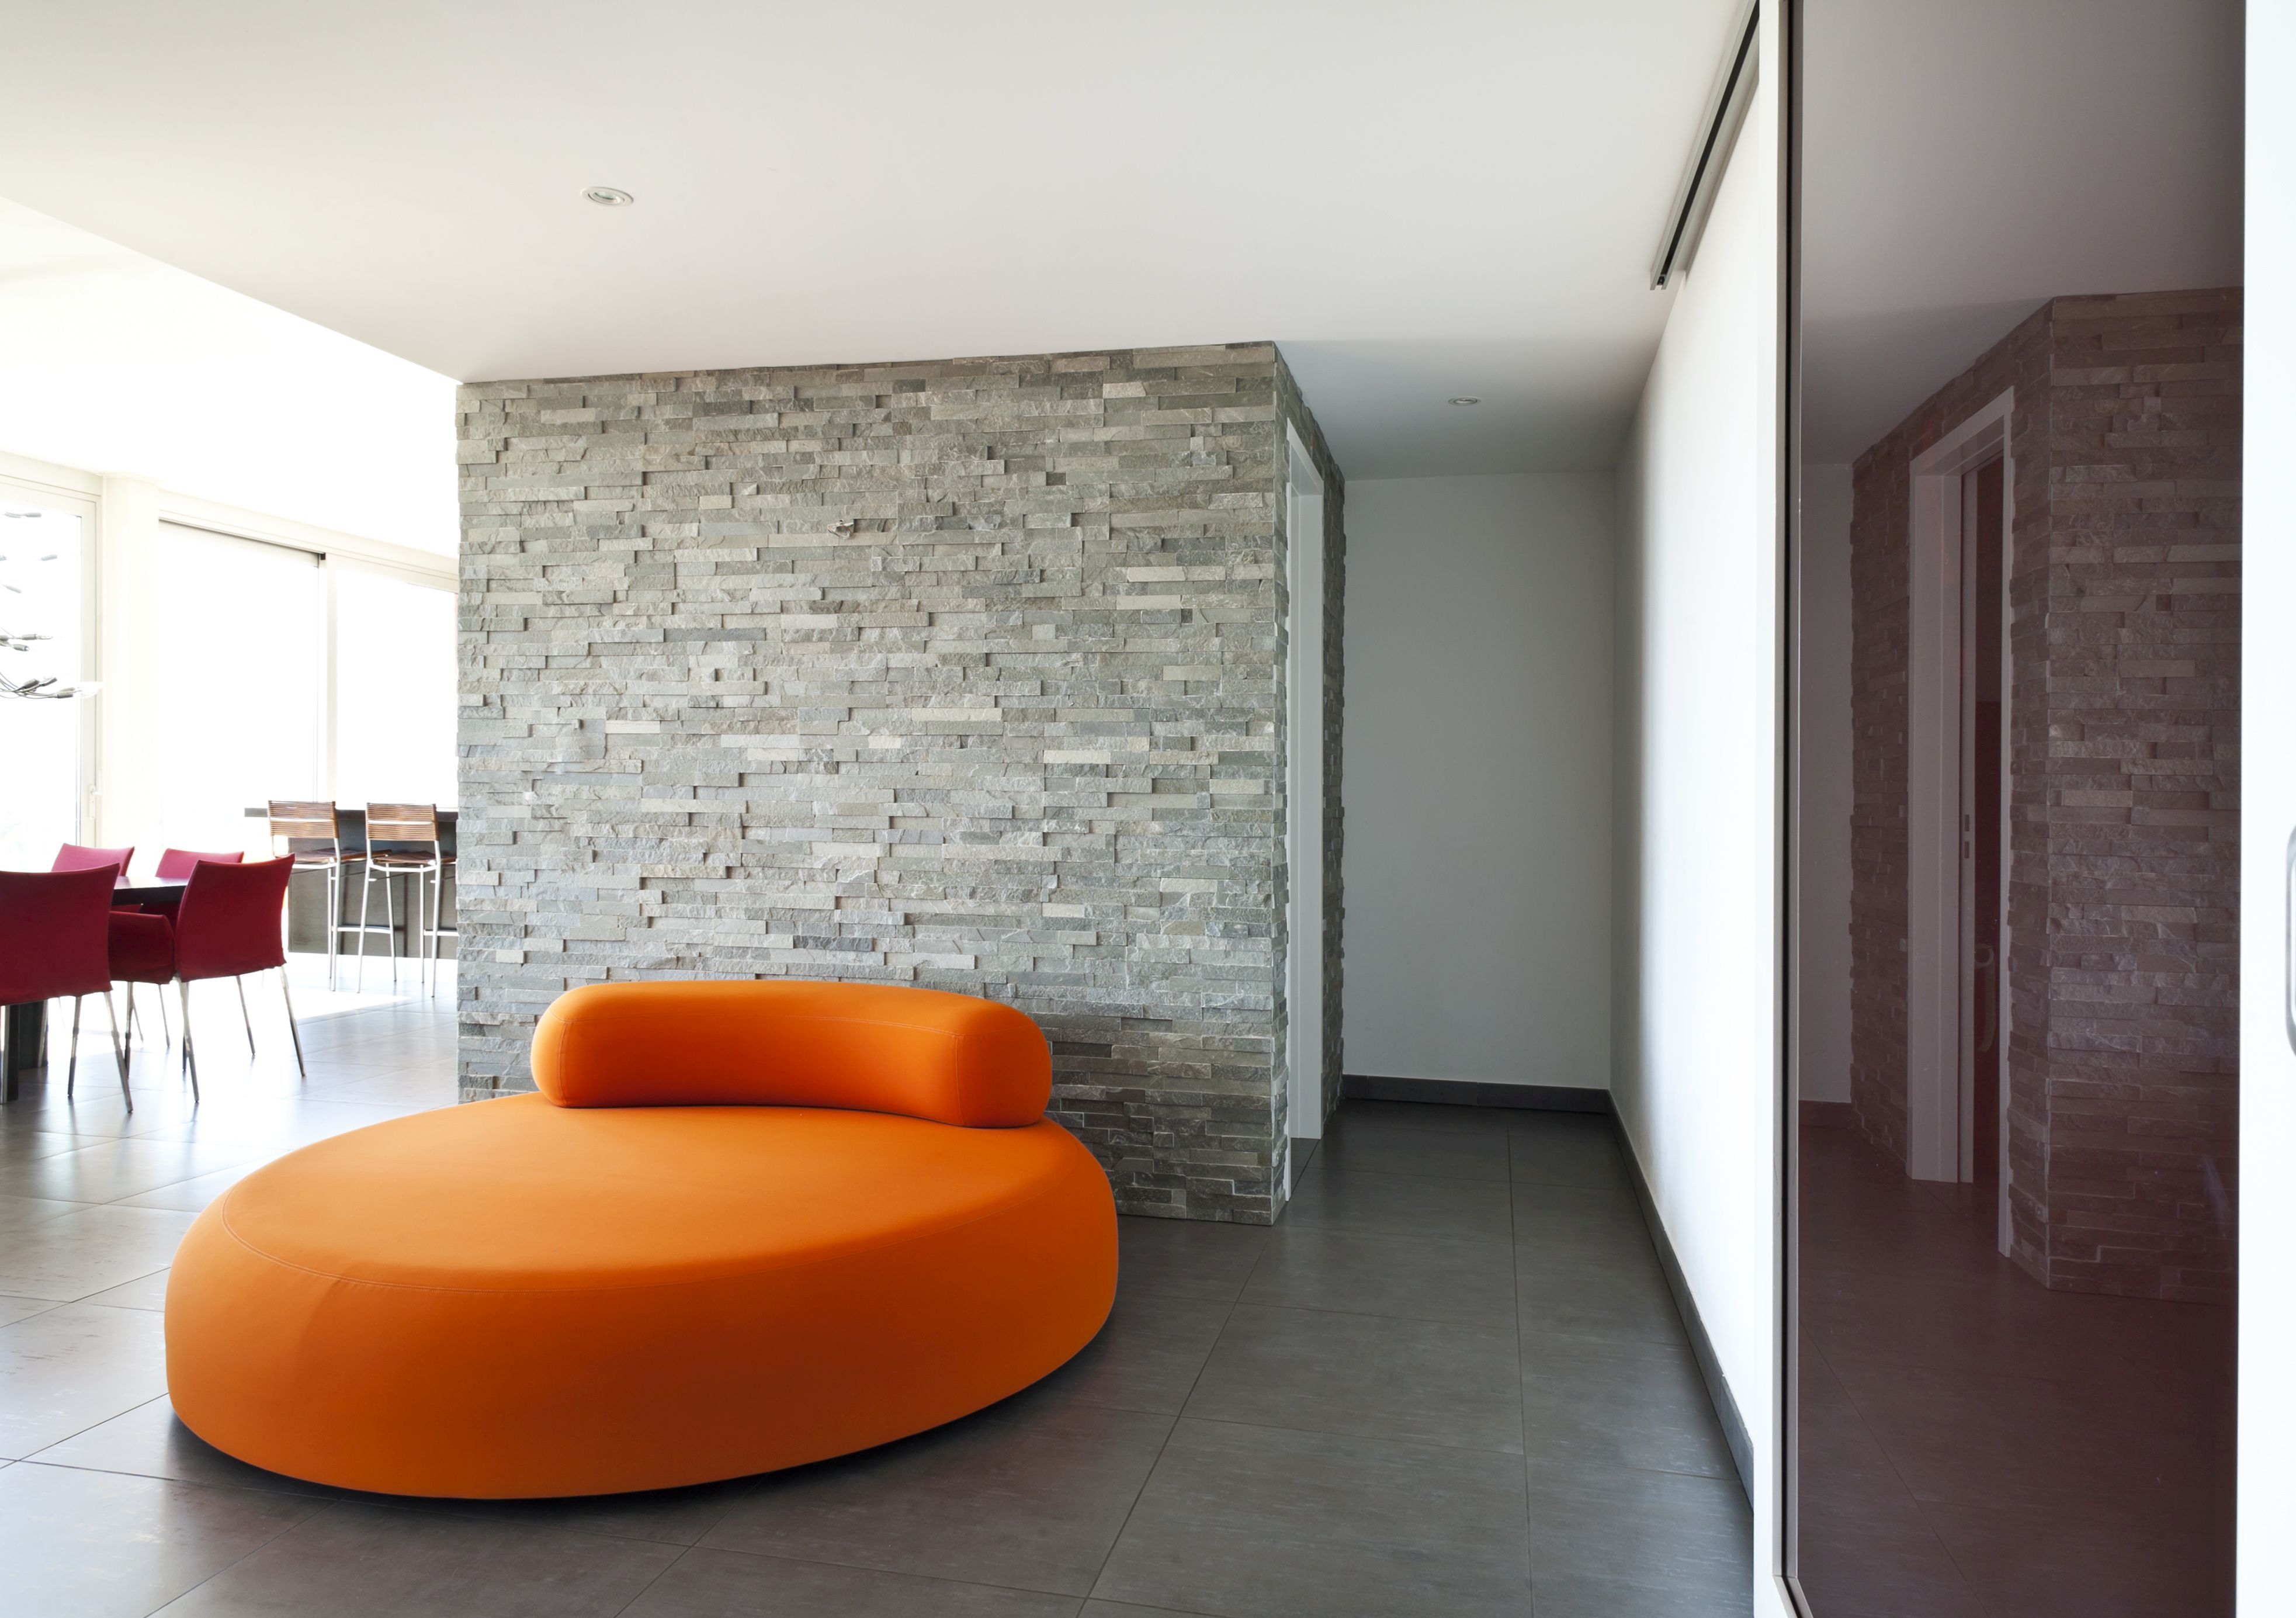 Die bisher eher kantigen Designs der  Polstermöbel werden 2020 durch ovale  und fließende Formen ersetzt!